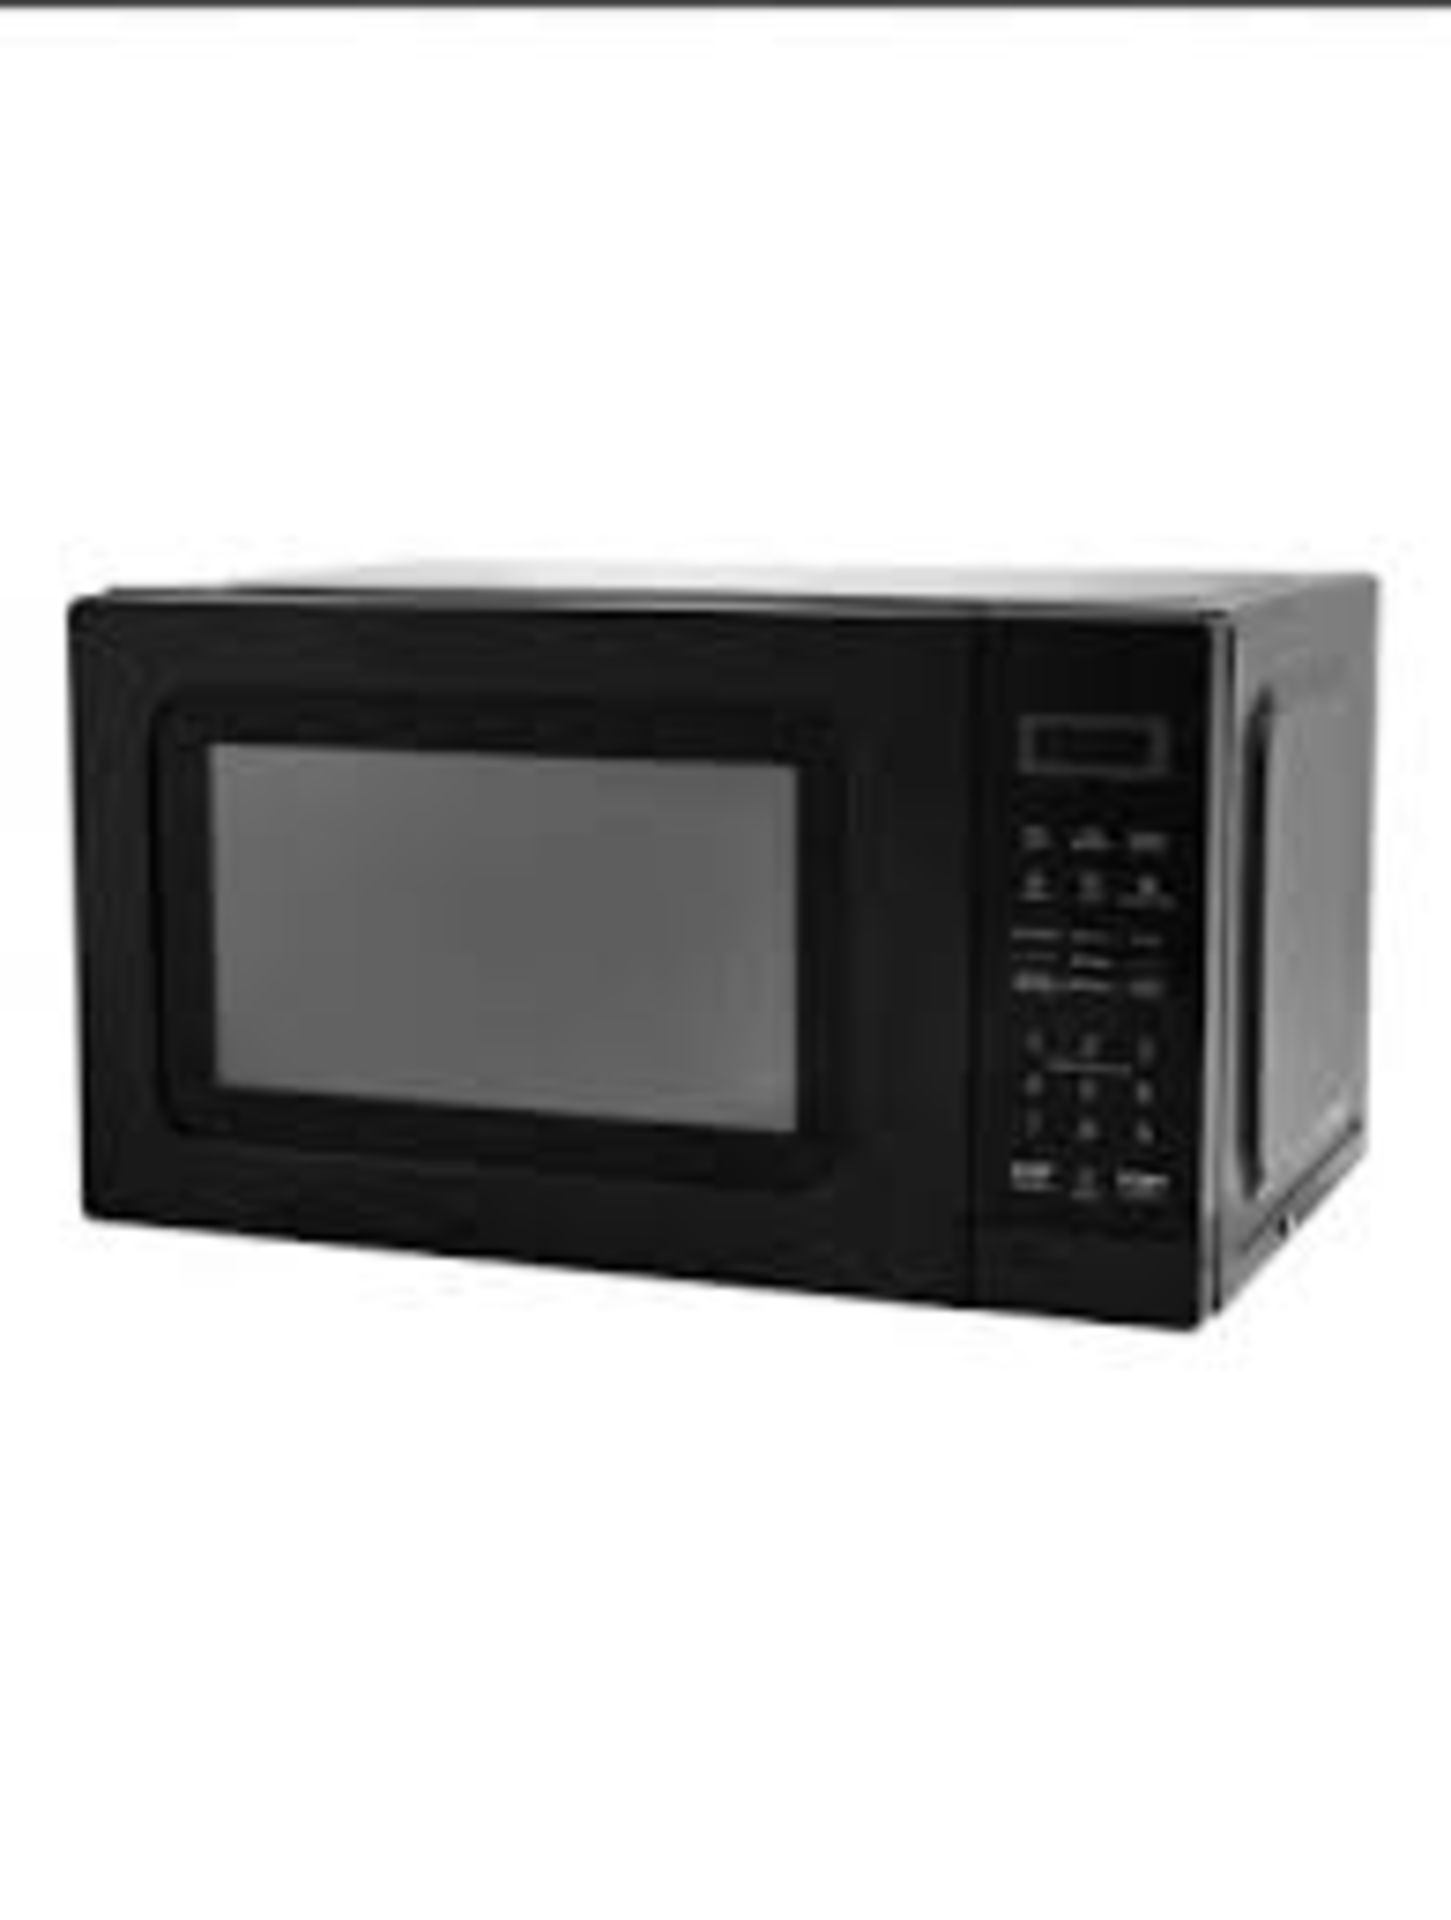 George Home 700W Black Digital Microwave - PW